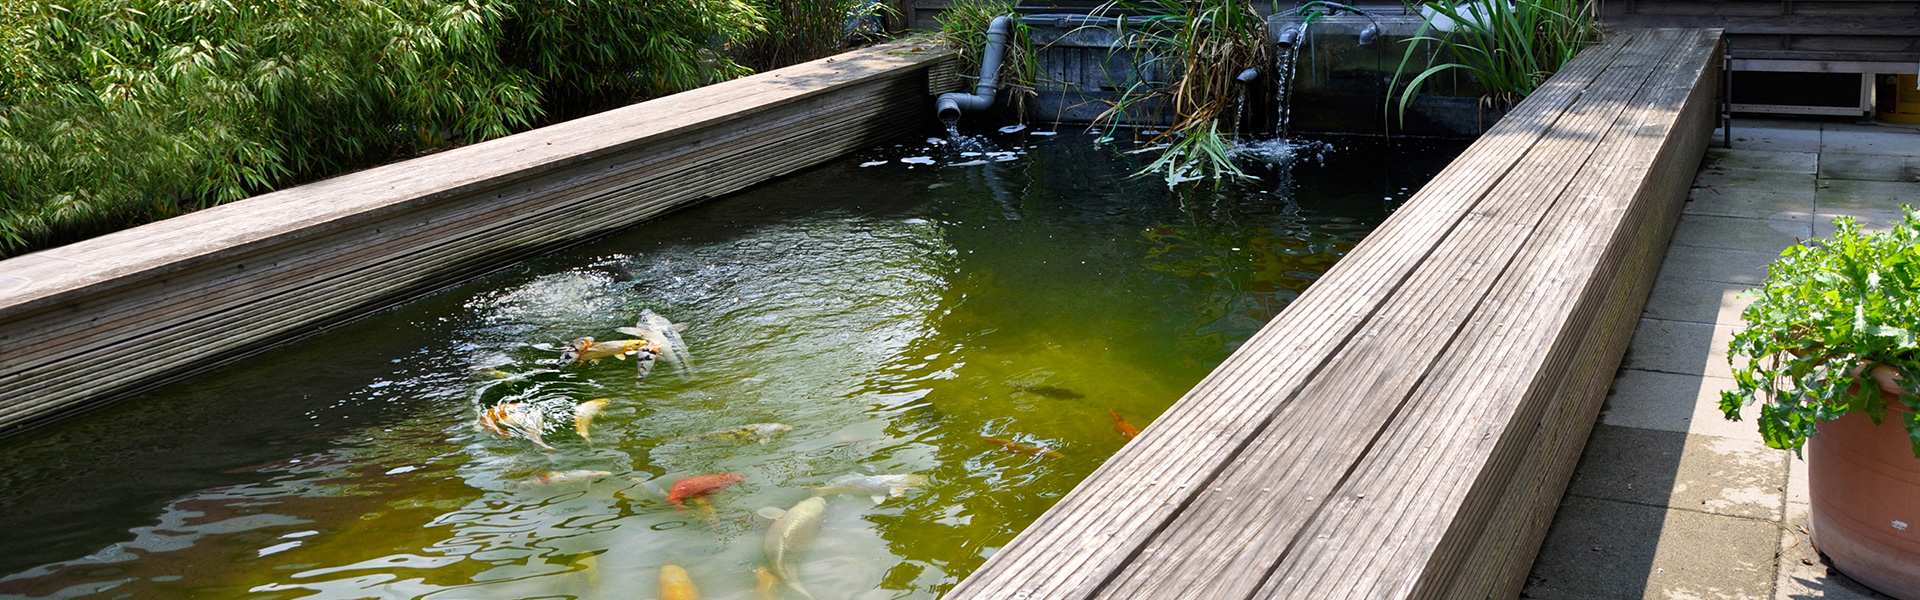 Fish Fever Außenanlage kleiner Teich mit Kois und Pflanzen